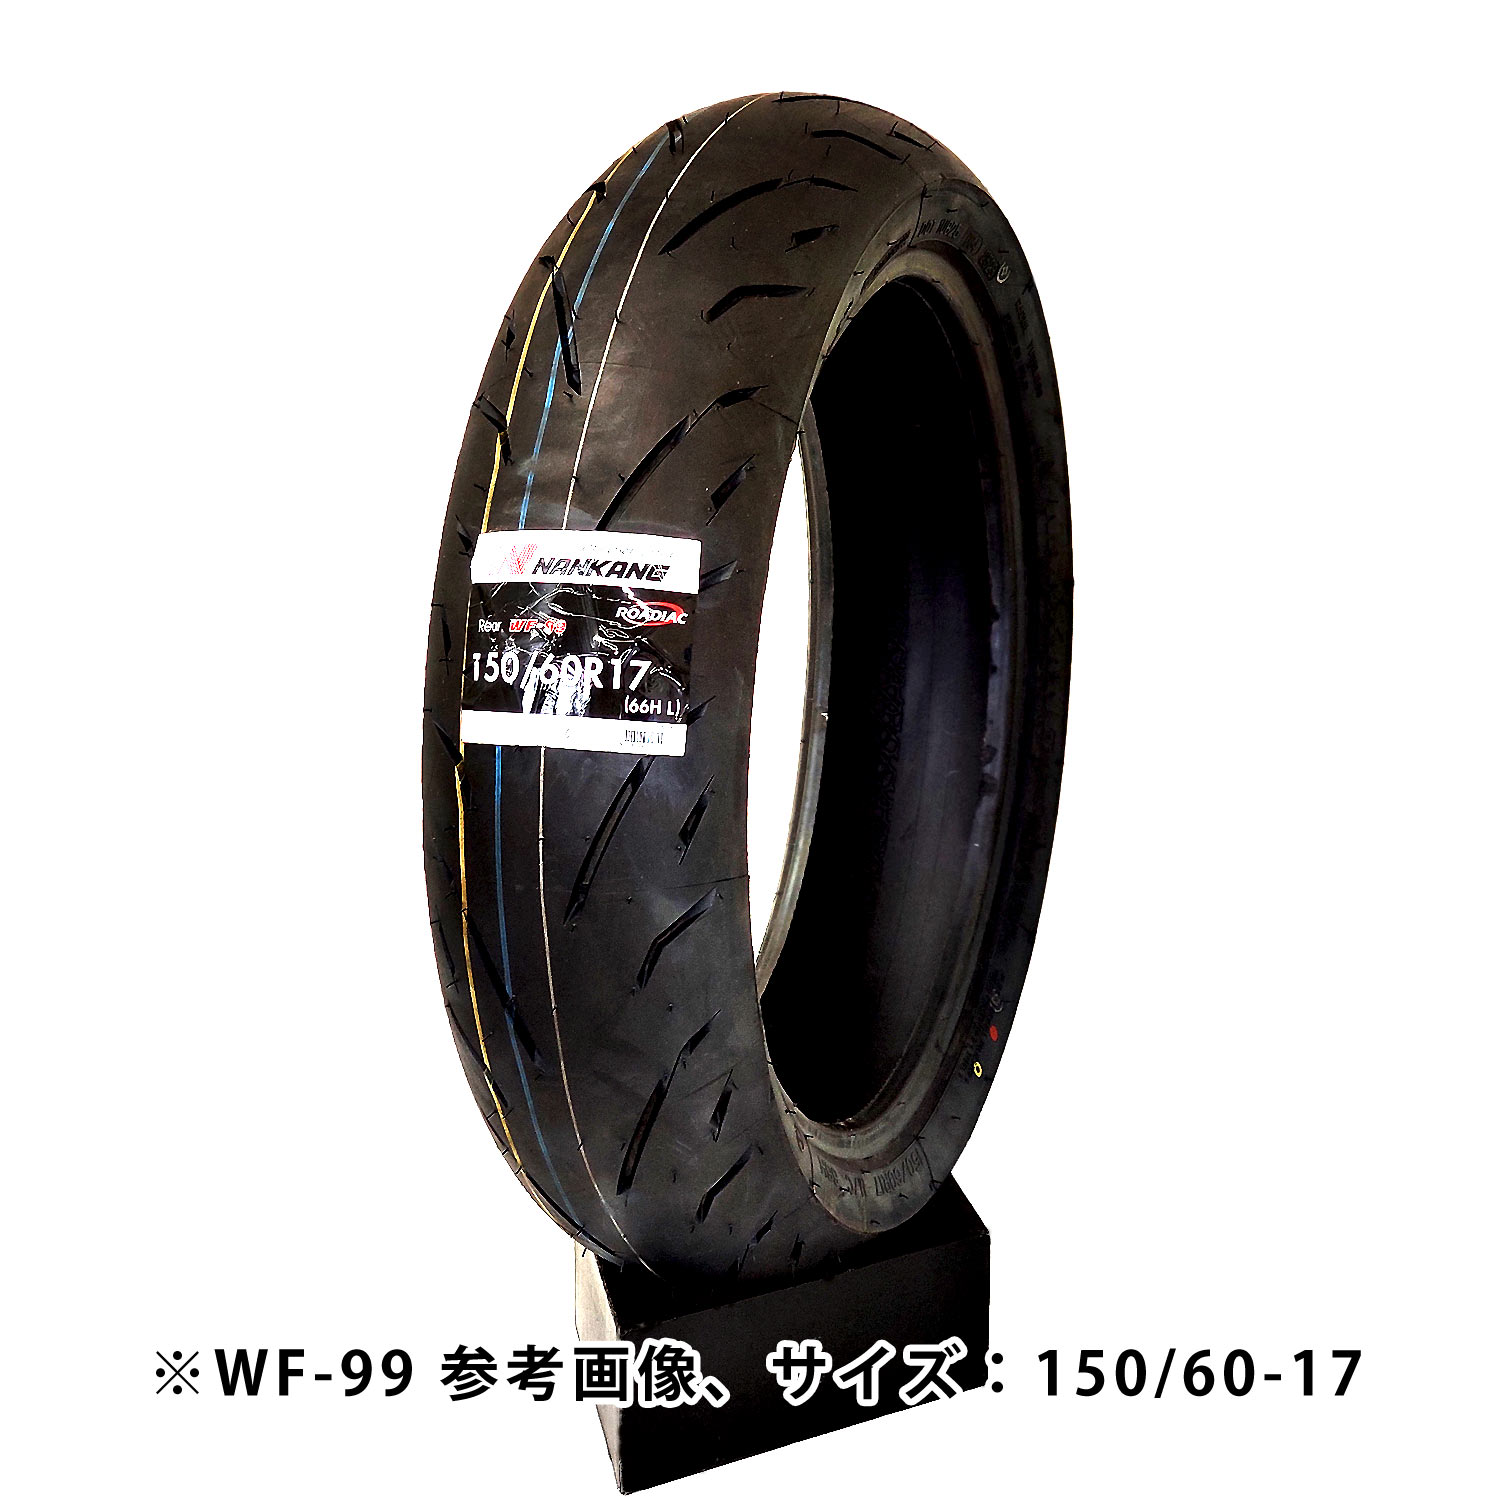 NANKANG| Nankang WF-99 140/70 R17 (66H) 17 -inch rear motorcycle bike tire high grip 250cc Naked circuit sport mileage ridge cheap 